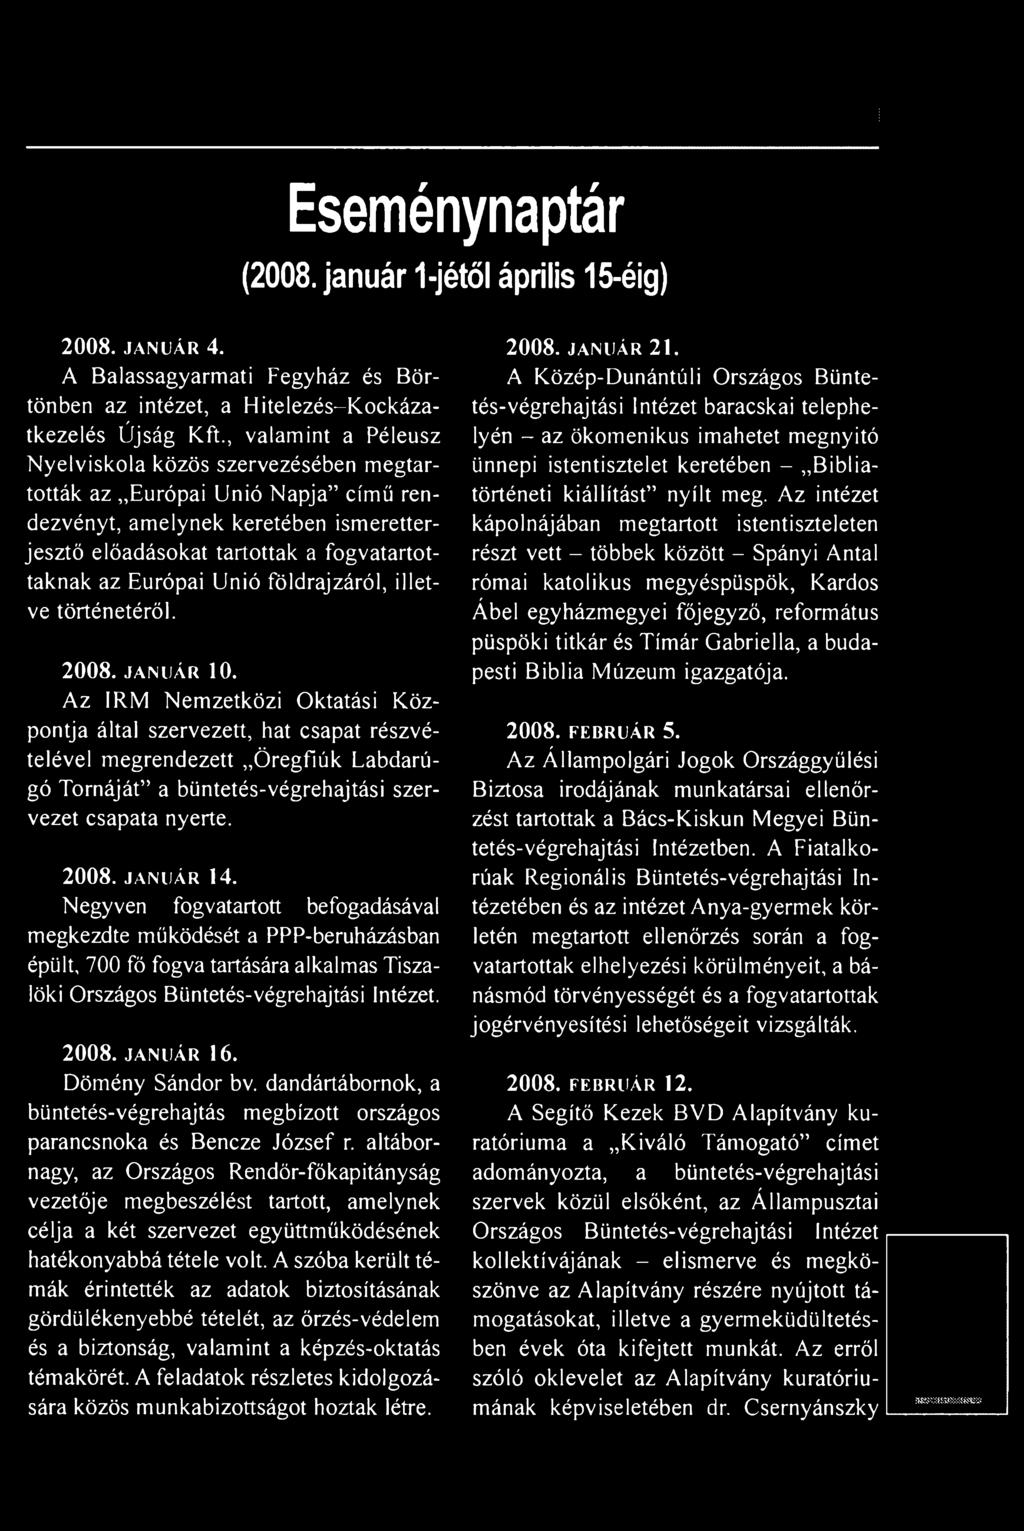 Negyven fogvatartott befogadásával megkezdte működését a PPP-beruházásban épült, 700 fő fogva tartására alkalmas Tiszalöki Országos Büntetés-végrehajtási Intézet. 2008. január 16. Dömény Sándor bv.